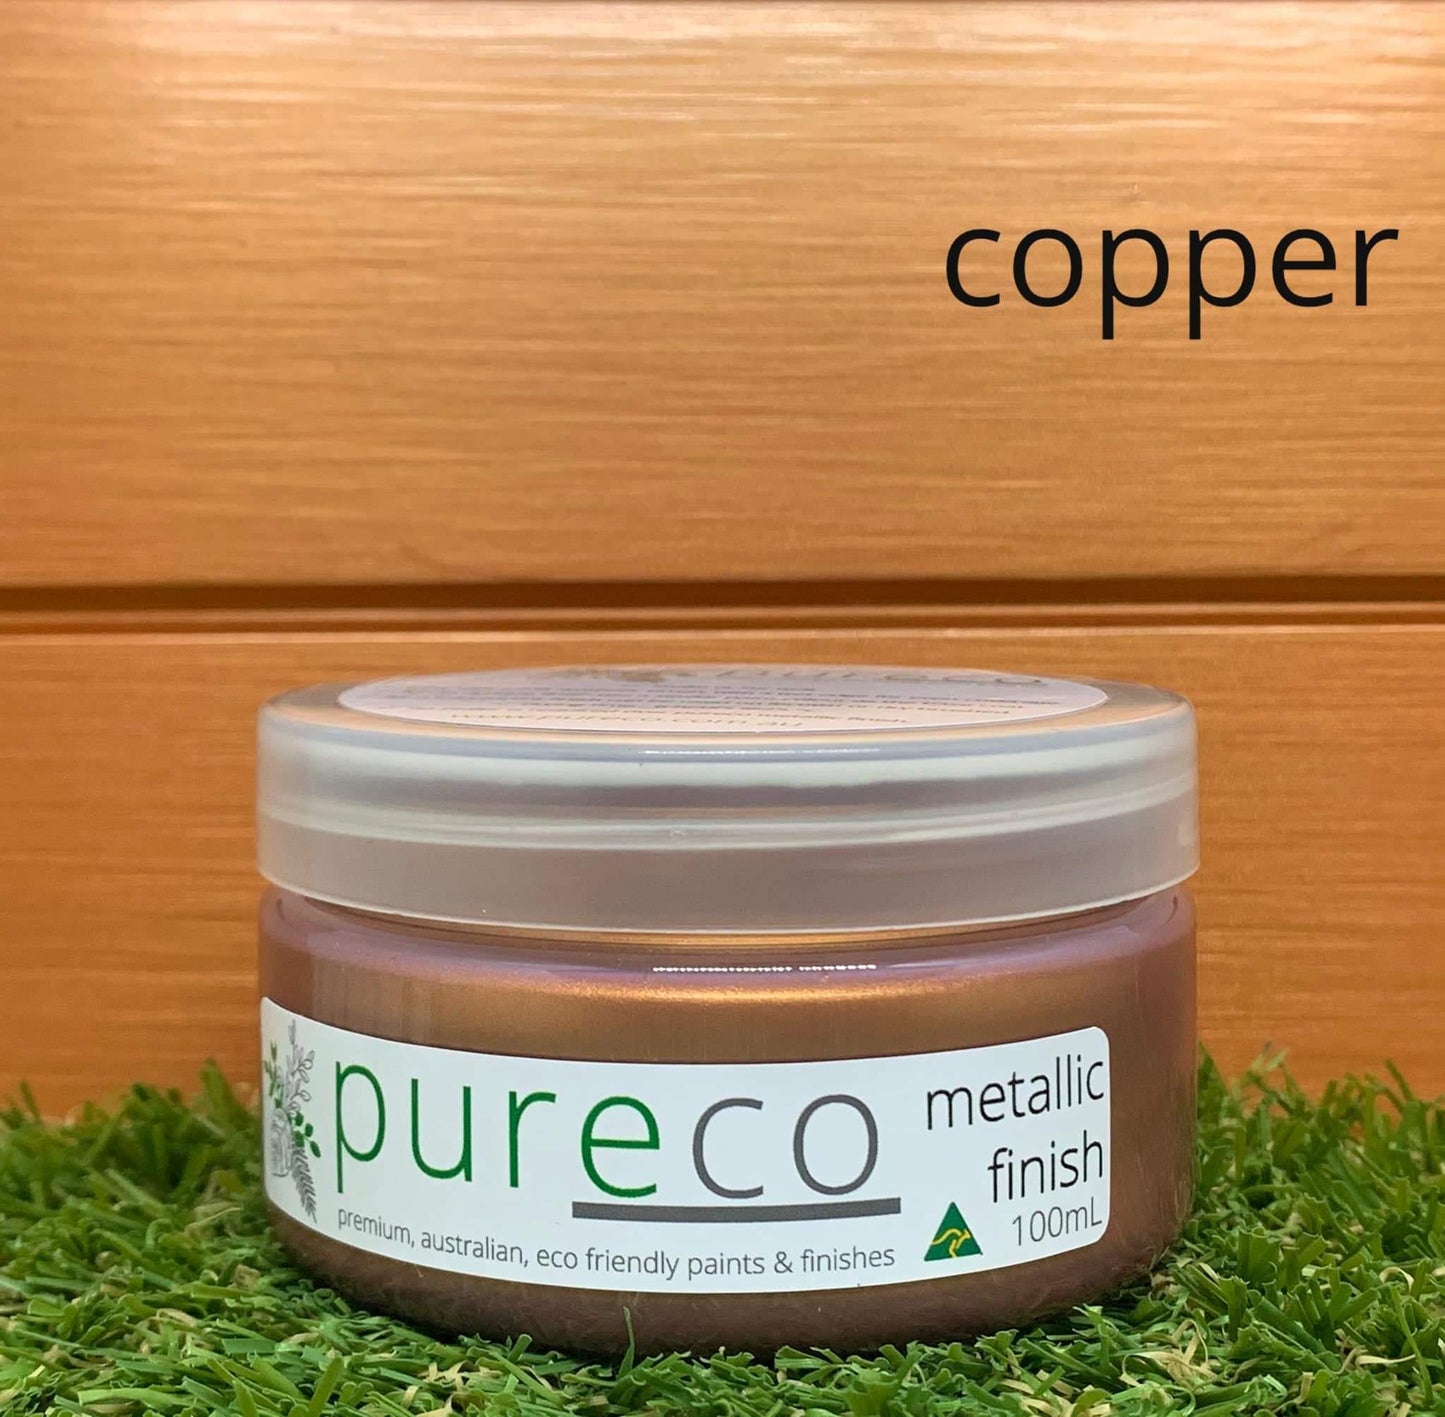 Pureco Metallic Finish Copper